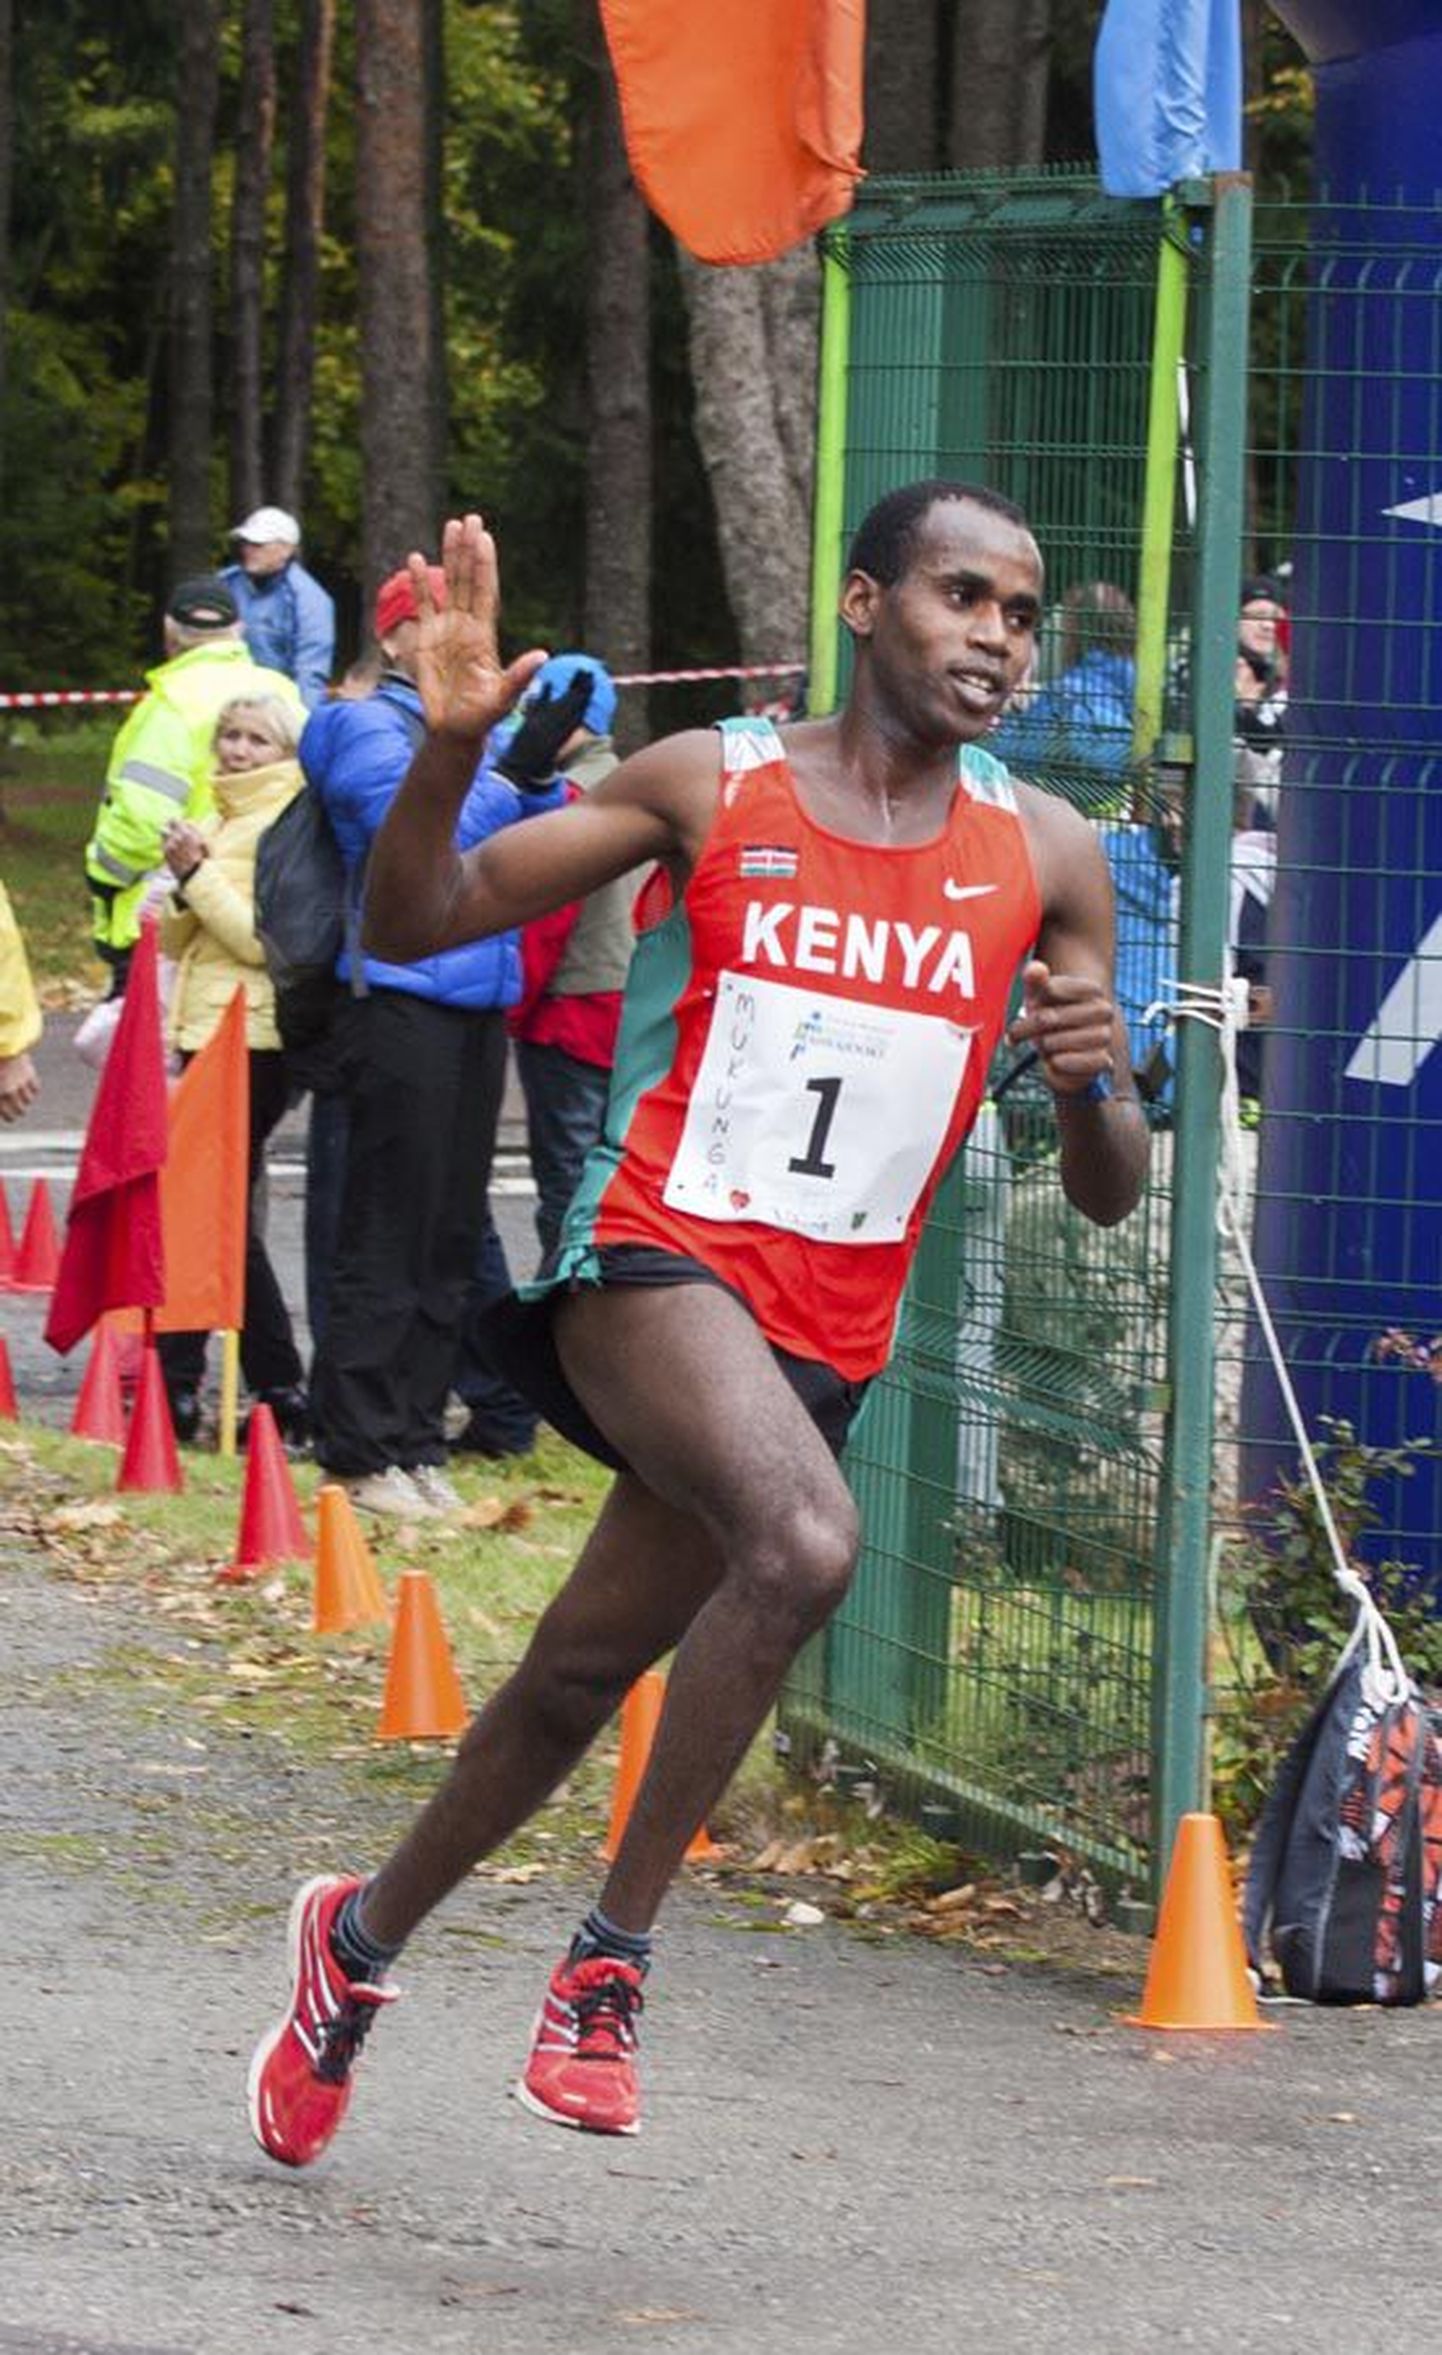 Pühapäeval Viljandis asetleidva 58. linnajooksu põhidistantsil on favoriit keenialane Ibrahim Mukunga, kes möödunud pühapäeval võitis Paide—Türi rahvajooksu.